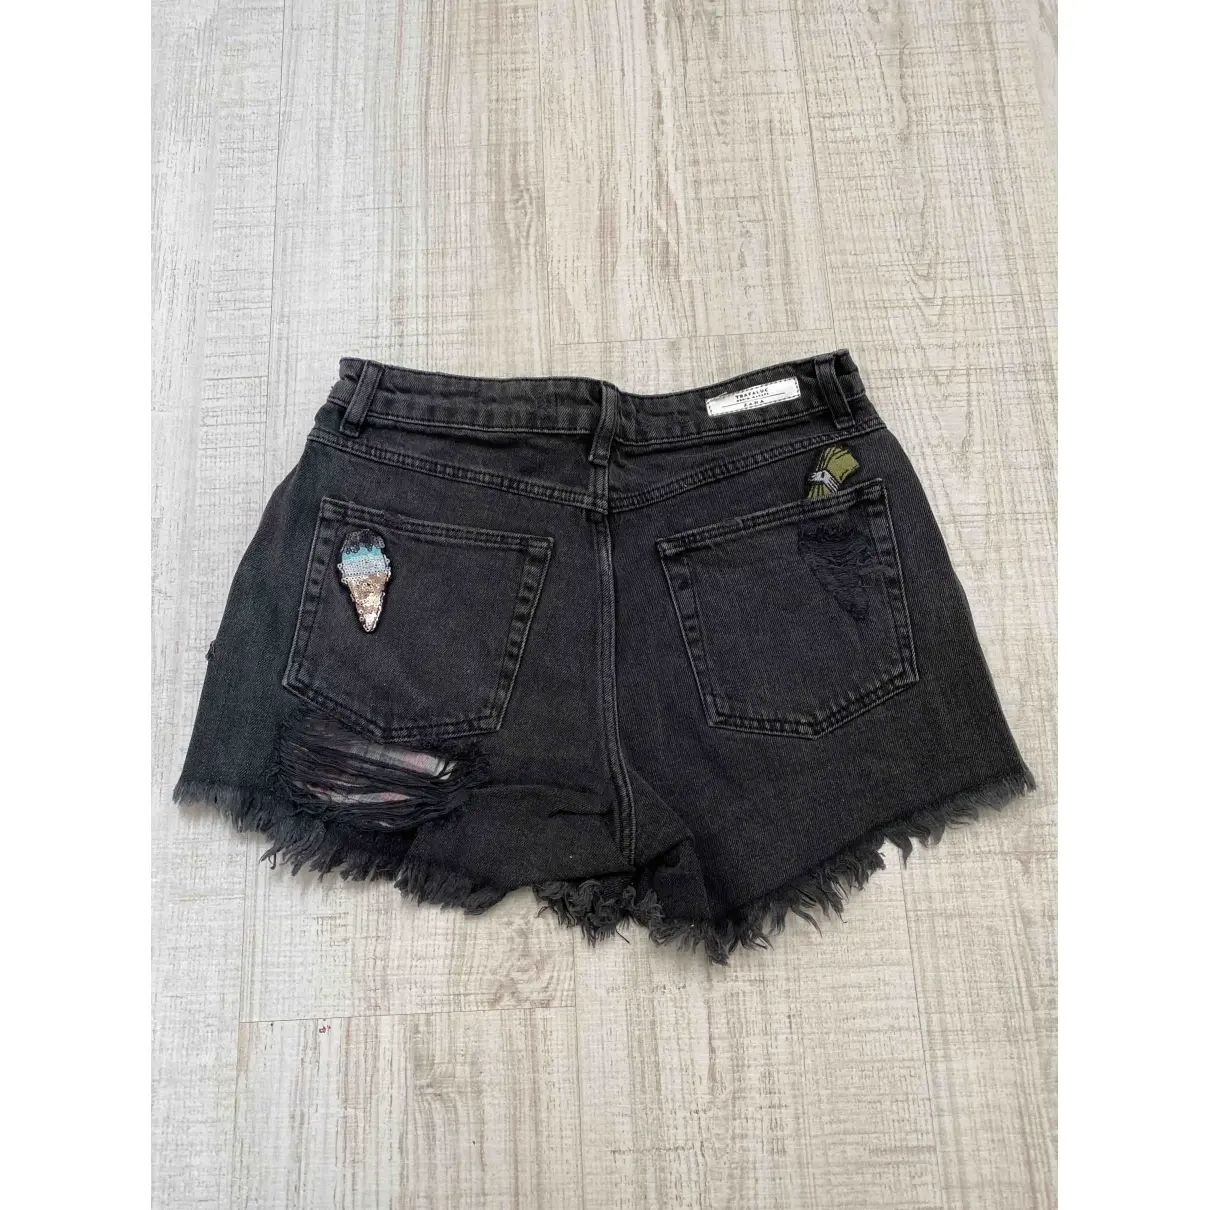 Zara Black Denim - Jeans Shorts for sale